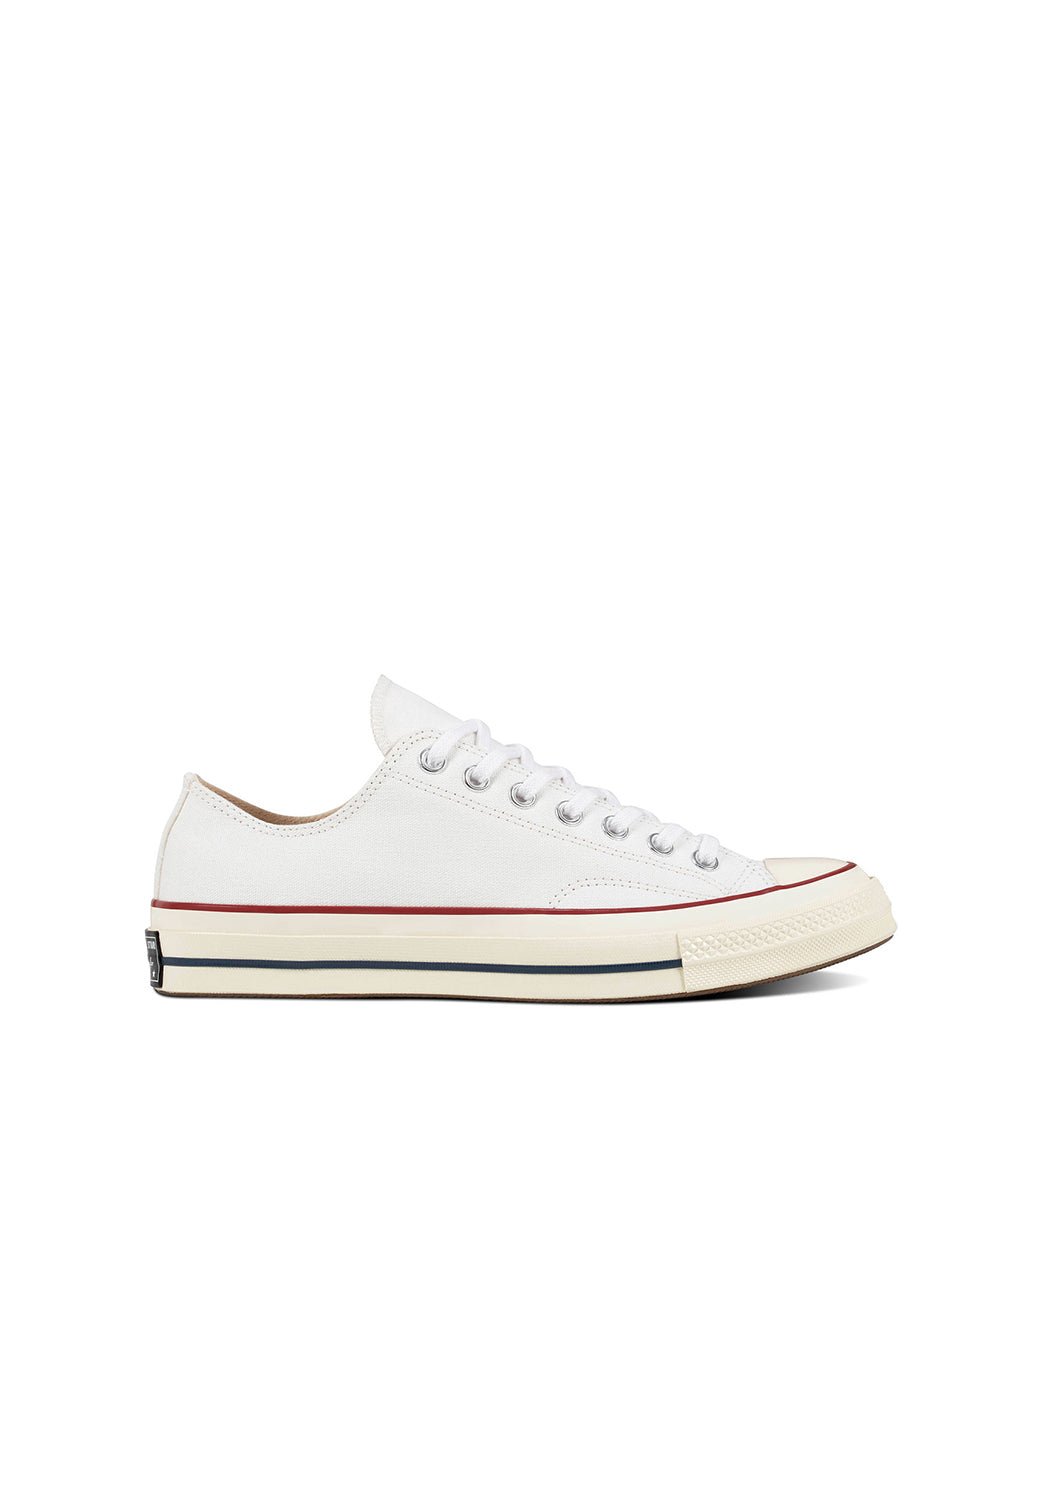 נעלי אולסטאר Chuck 70 נמוכות בצבע לבן לנשים - Converse